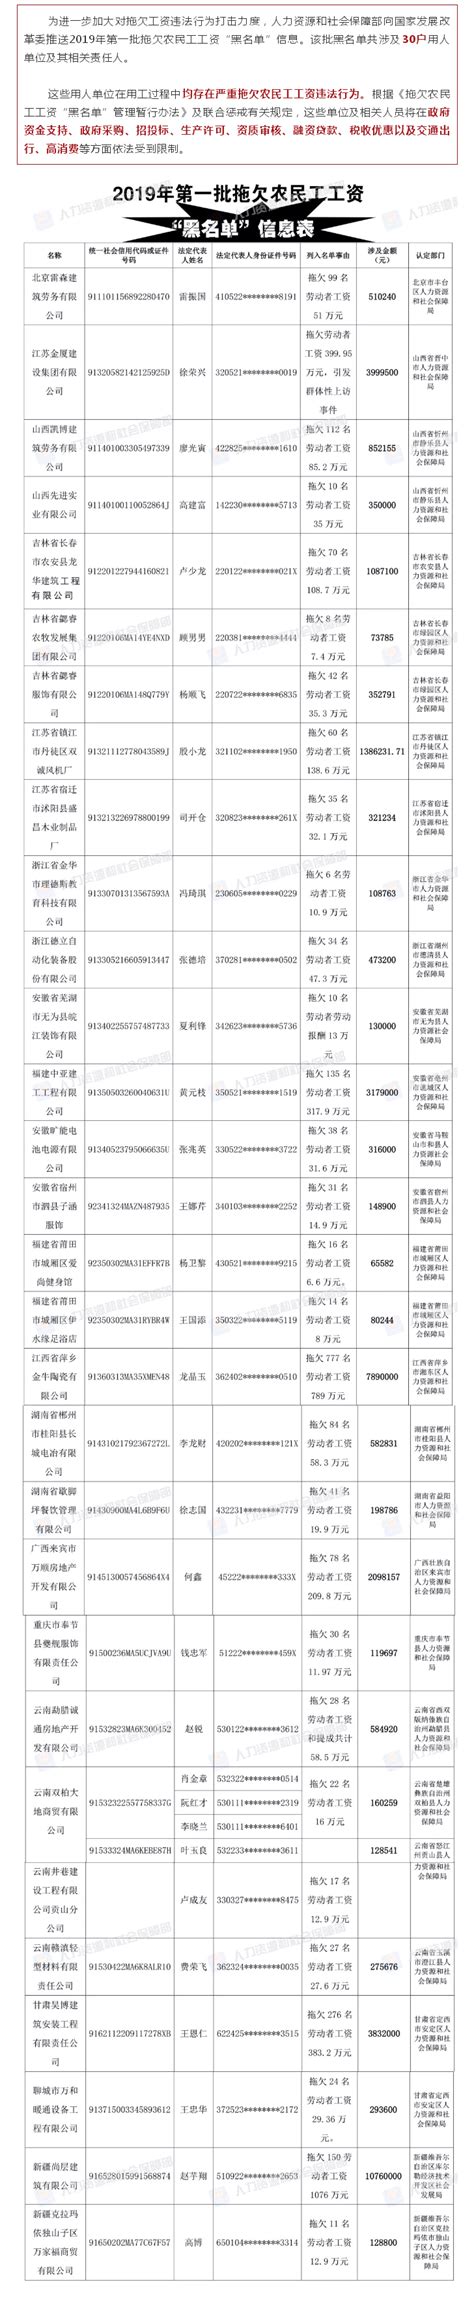 2019年第一批拖欠农民工工资“黑名单”公布_服务信息_中国政府网